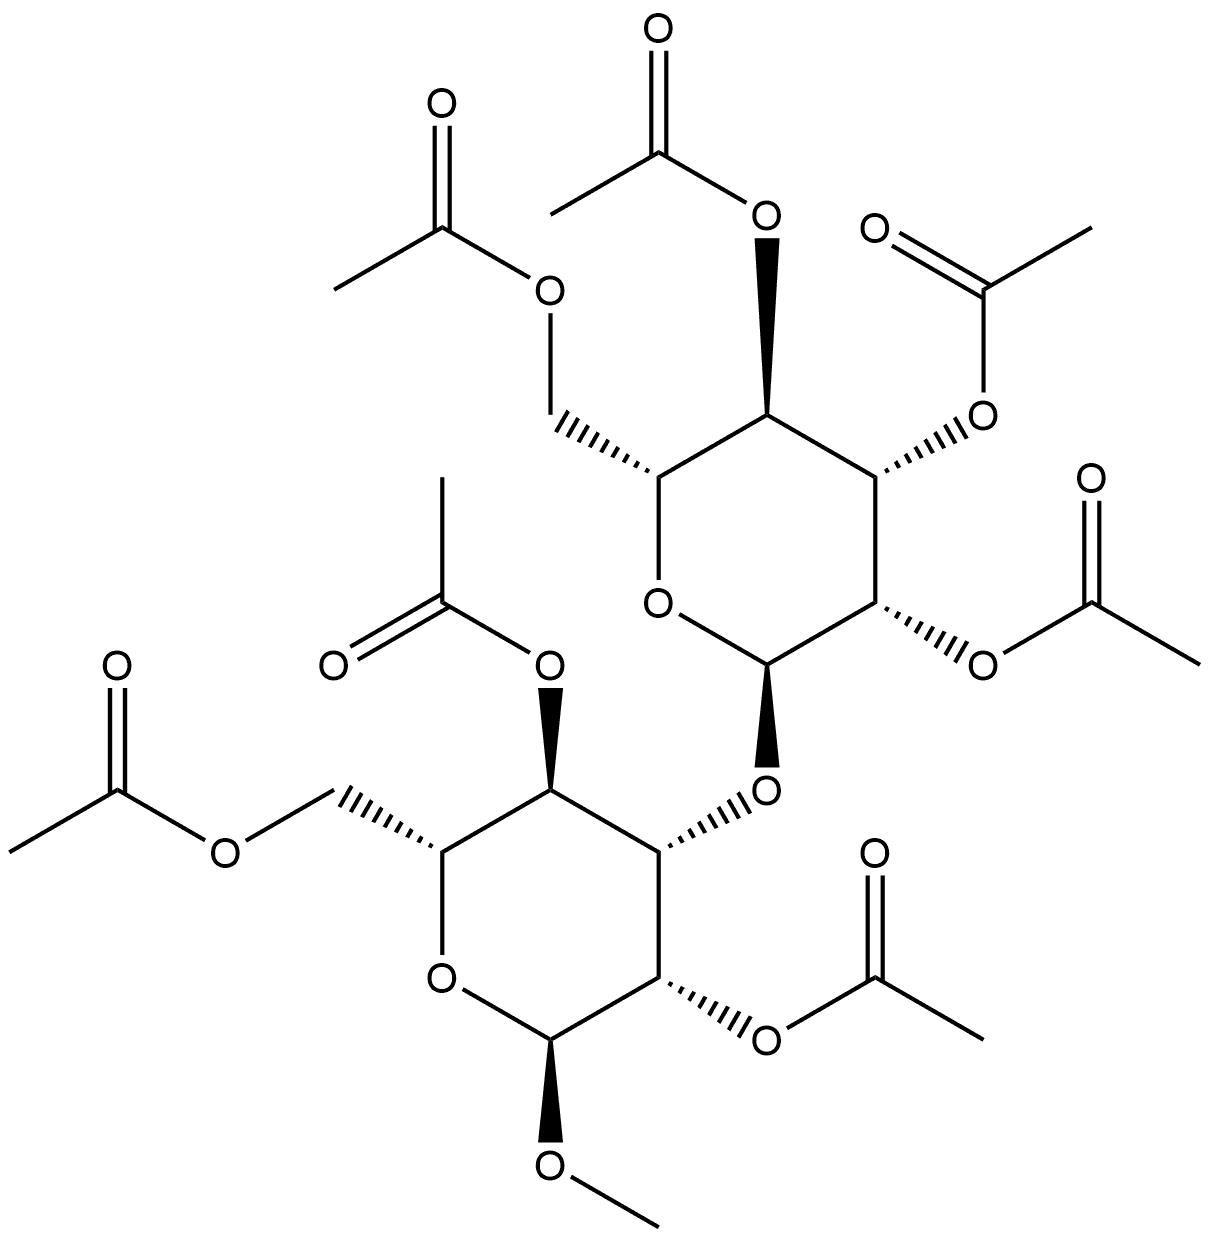 α-D-Mannopyranoside, methyl 3-O-(2,3,4,6-tetra-O-acetyl-α-D-mannopyranosyl)-, 2,4,6-triacetate